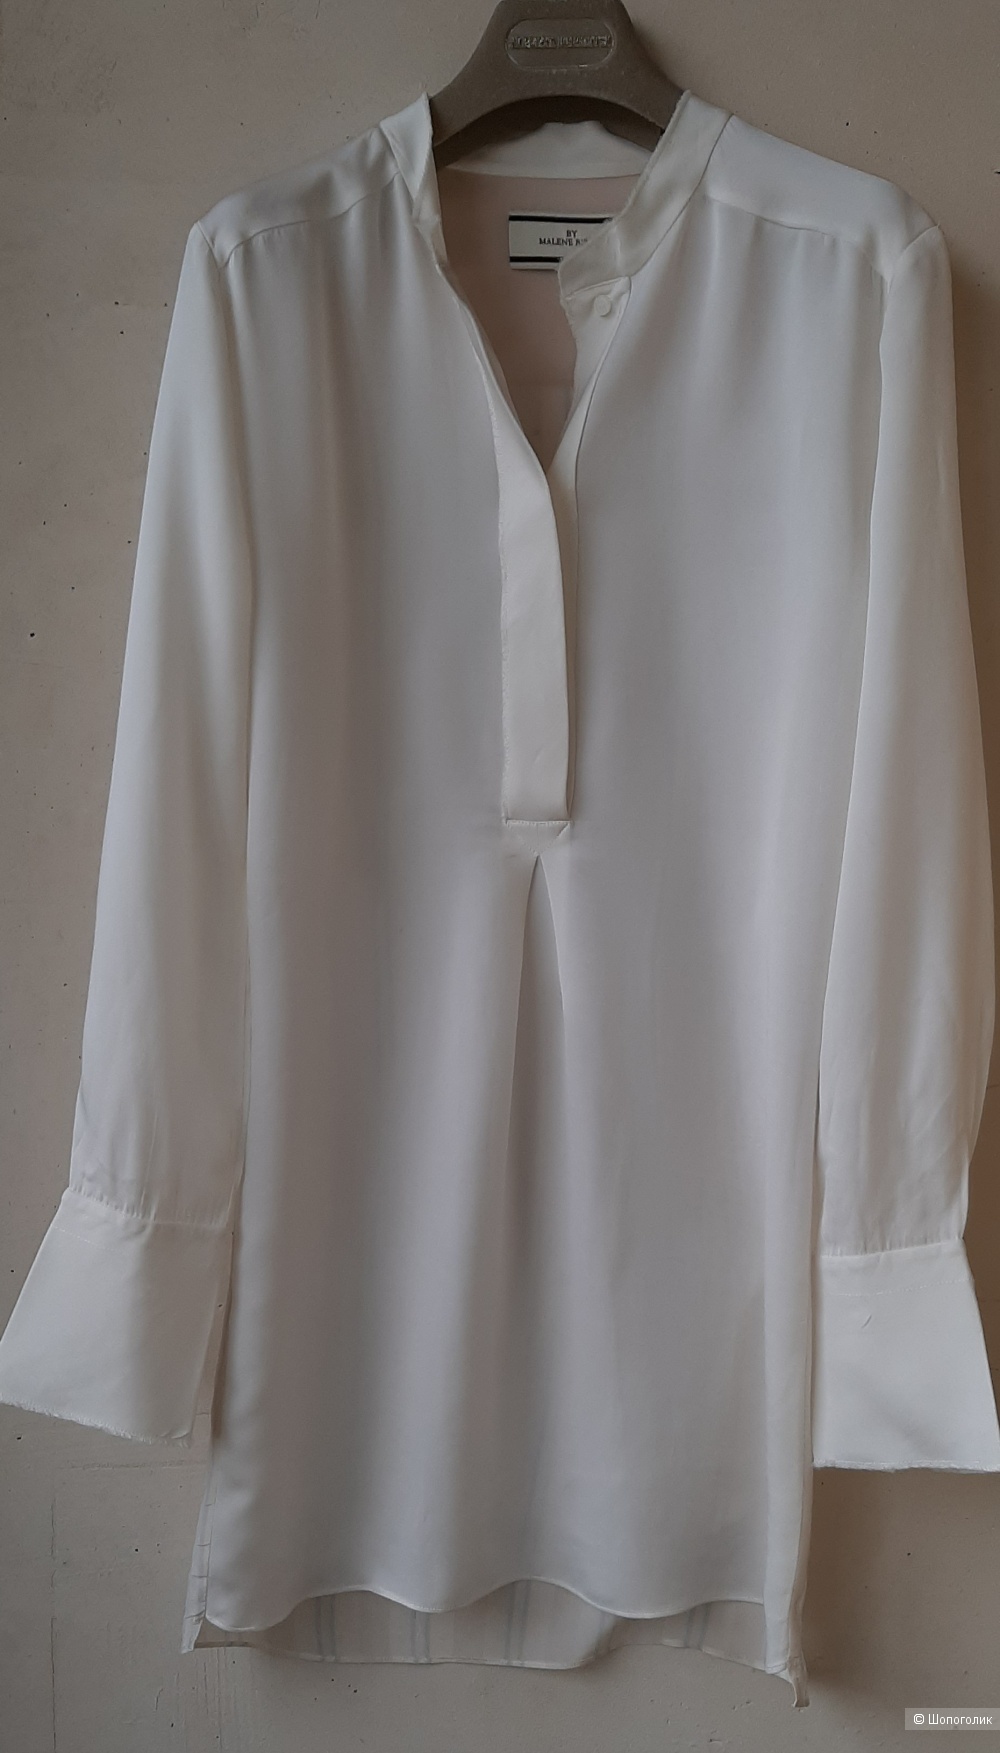 Шелковая блуза- туника By Malen Birger, 36 на 42